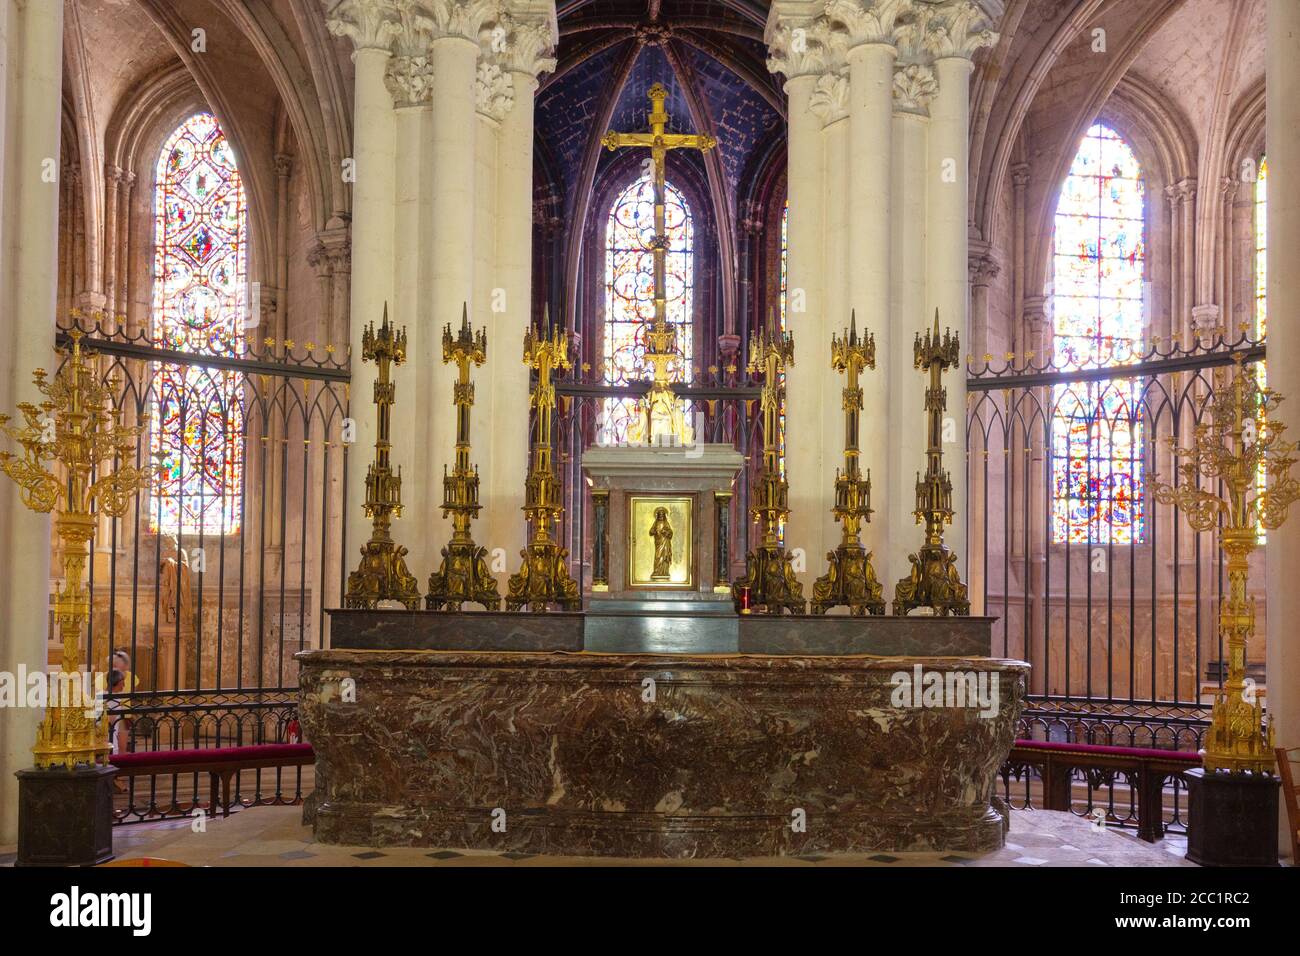 St. Gatien Cathedral Tours, Innenraum mit Altar und Buntglasfenstern, Kathedrale St. Gatien, Tours France Stockfoto